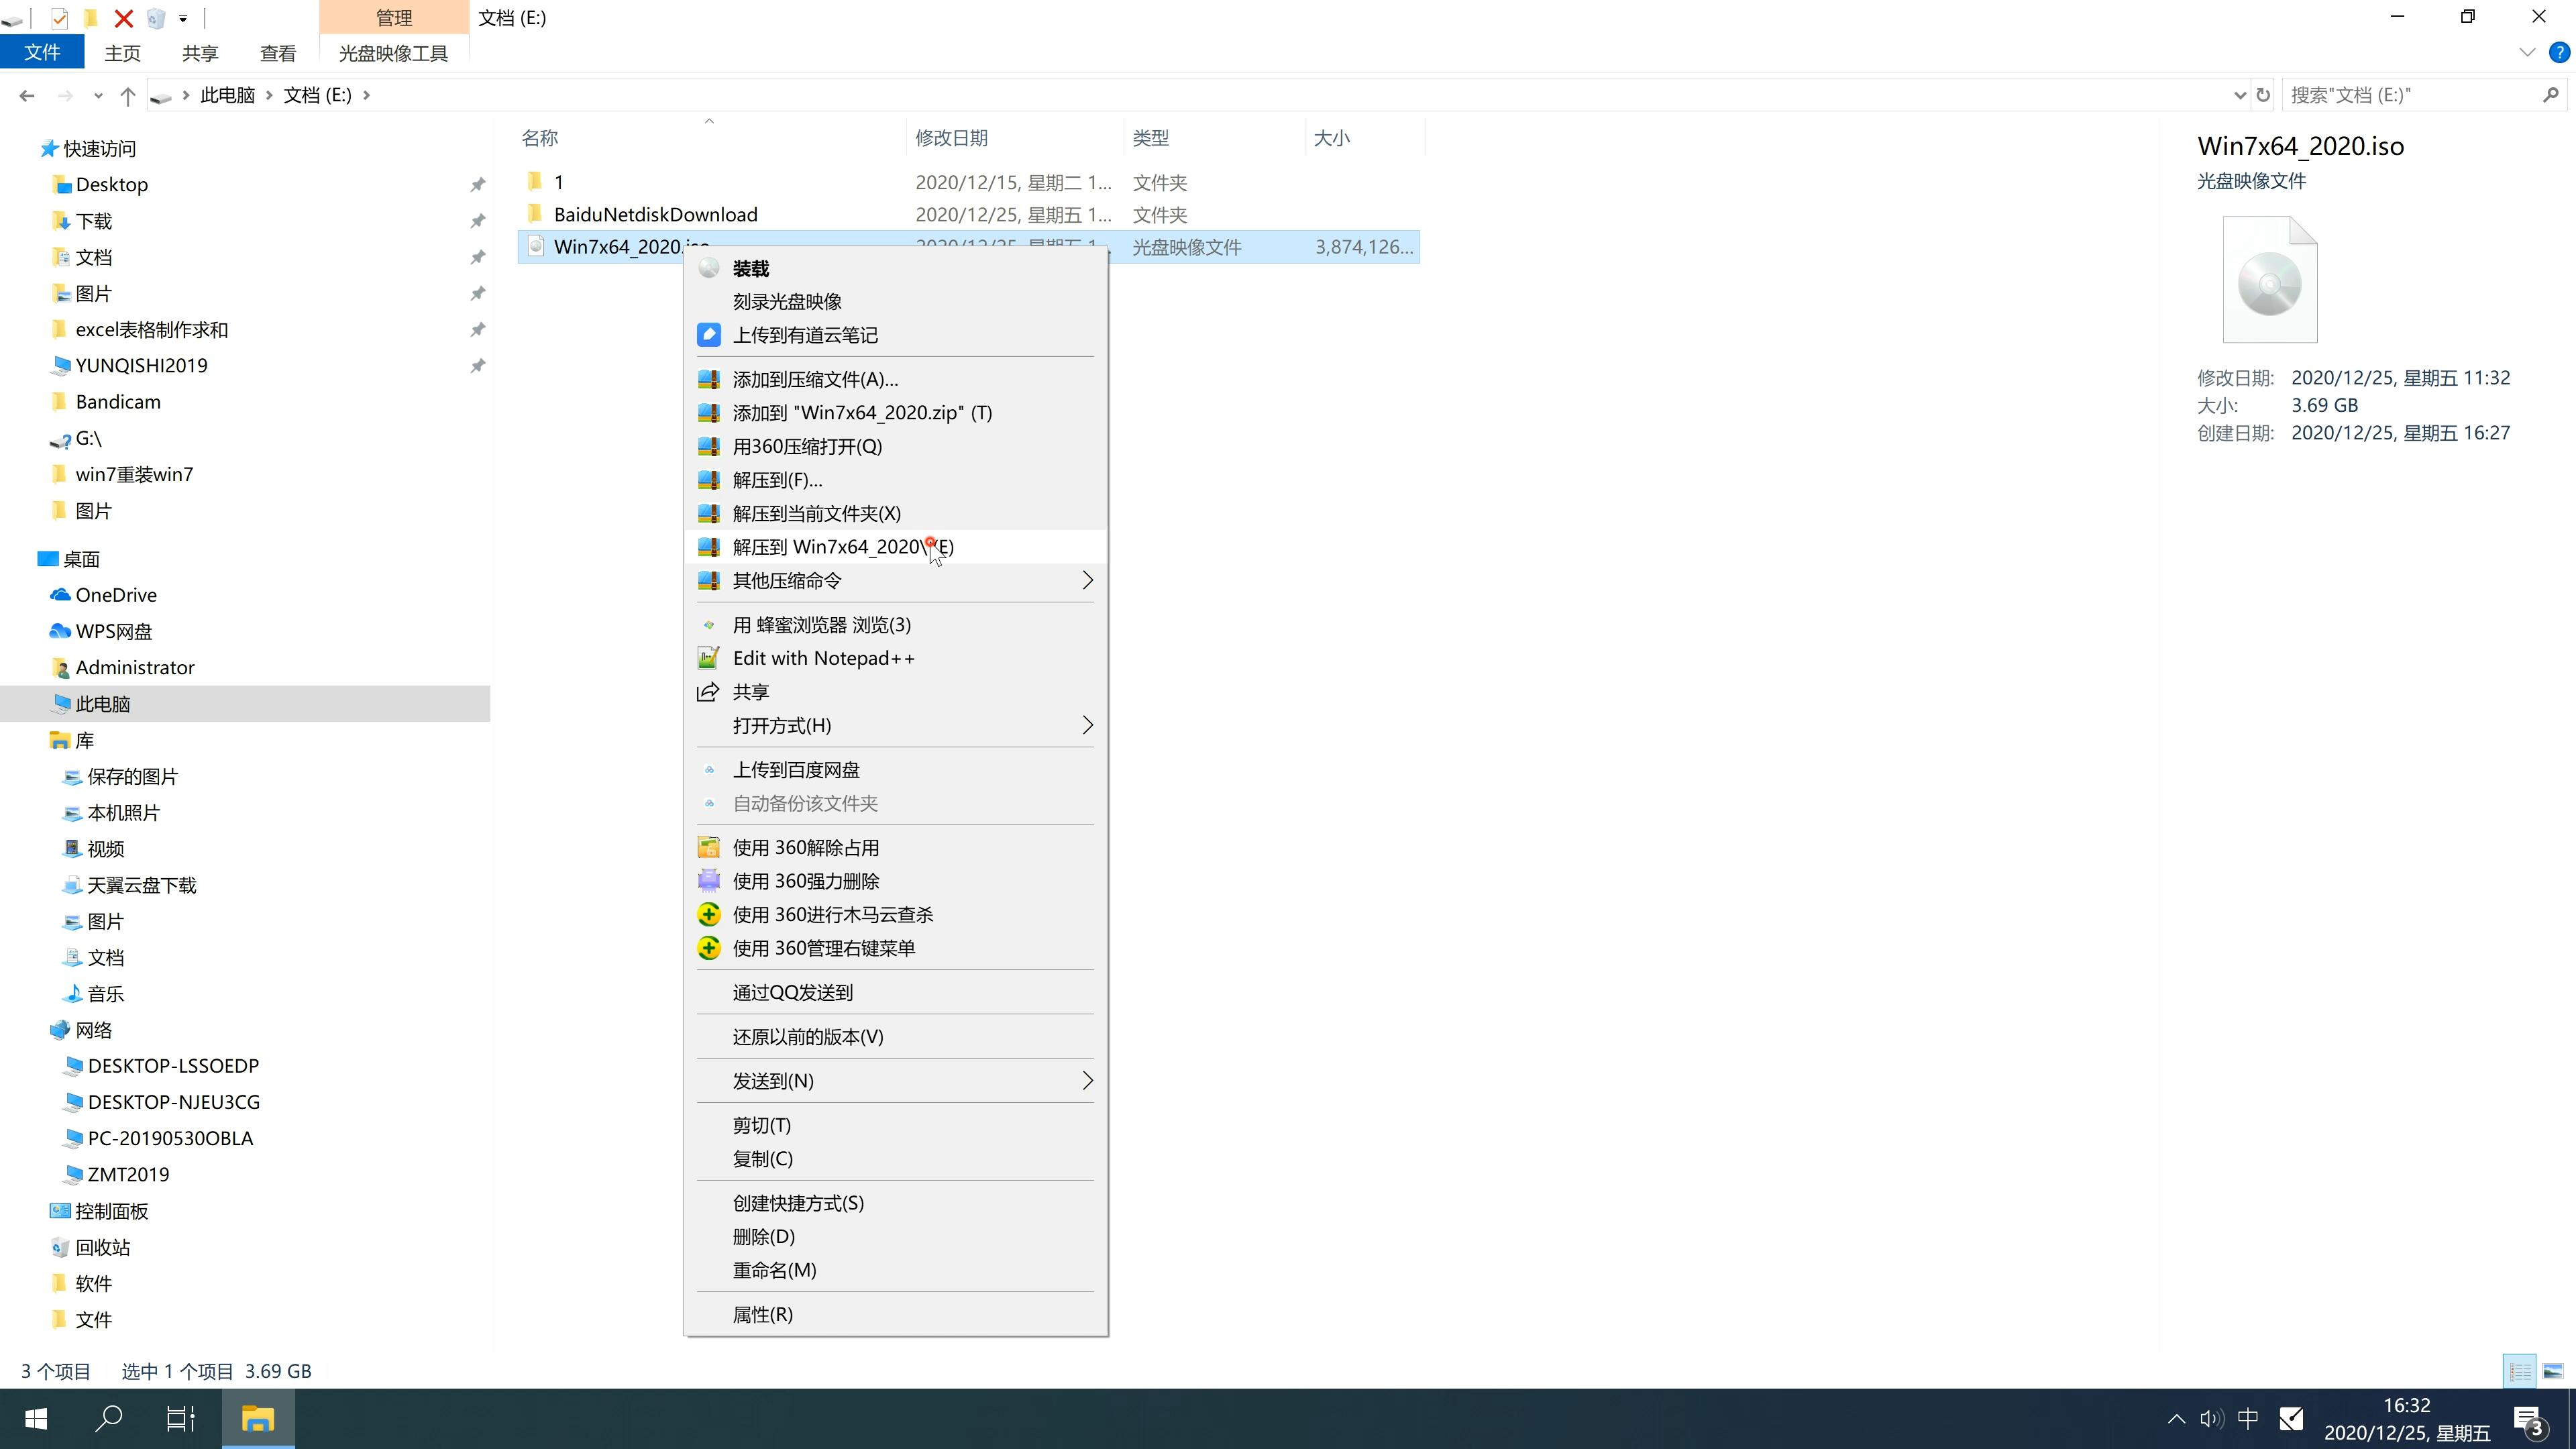 新版笔记本专用系统 Ghost Window7 x64 SP1 装机旗舰版下载 V2021.02(2)